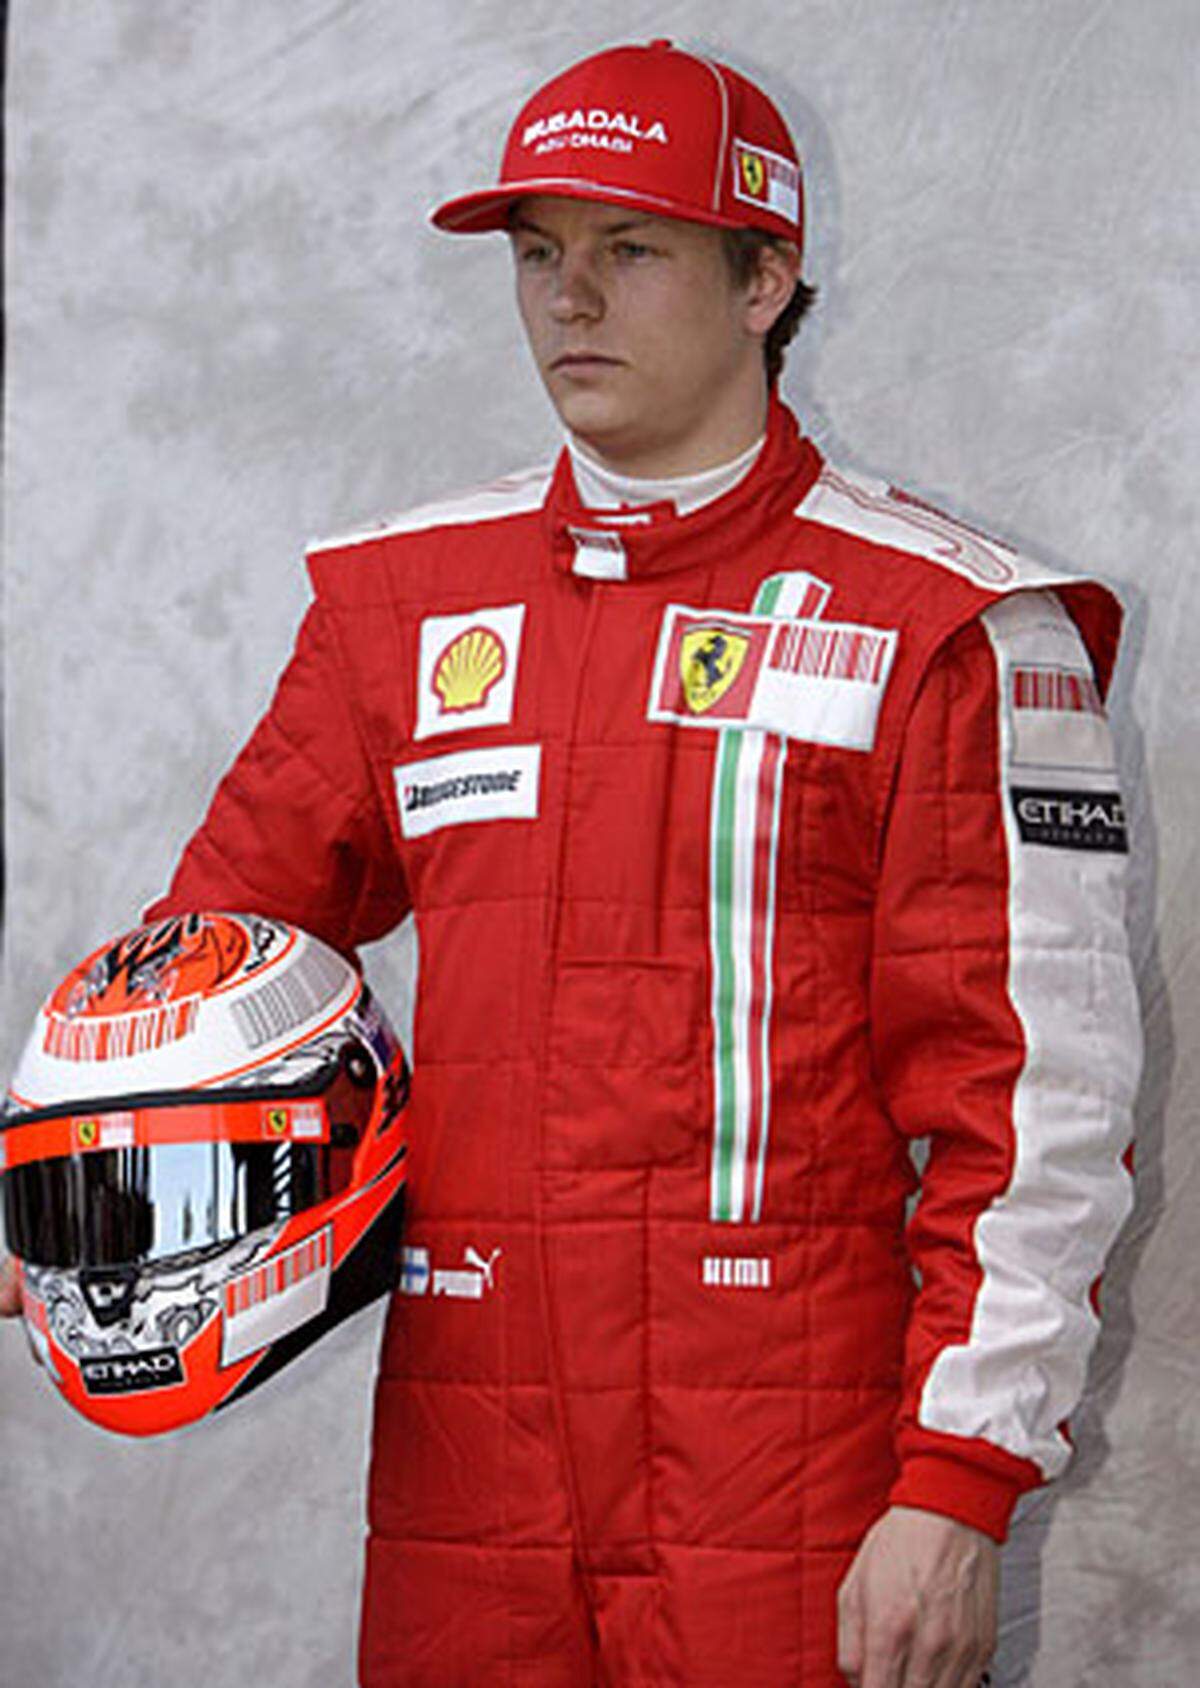 Bei Ferrari ist klar: Für Kimi Räikkönen, den Weltmeister von 2007, gibt es keinen Platz mehr. Der Finne bekam nach zwei durchwachsenen Jahren keinen neuen Vertrag und auch Verhandlungen mit McLaren zerschlugen sich. Räikkönen wird 2010 in der Rallye-WM fahren. Anfang Dezember 2009 bestätigte das Citroen-Team die Verpflichtung des Finnen.